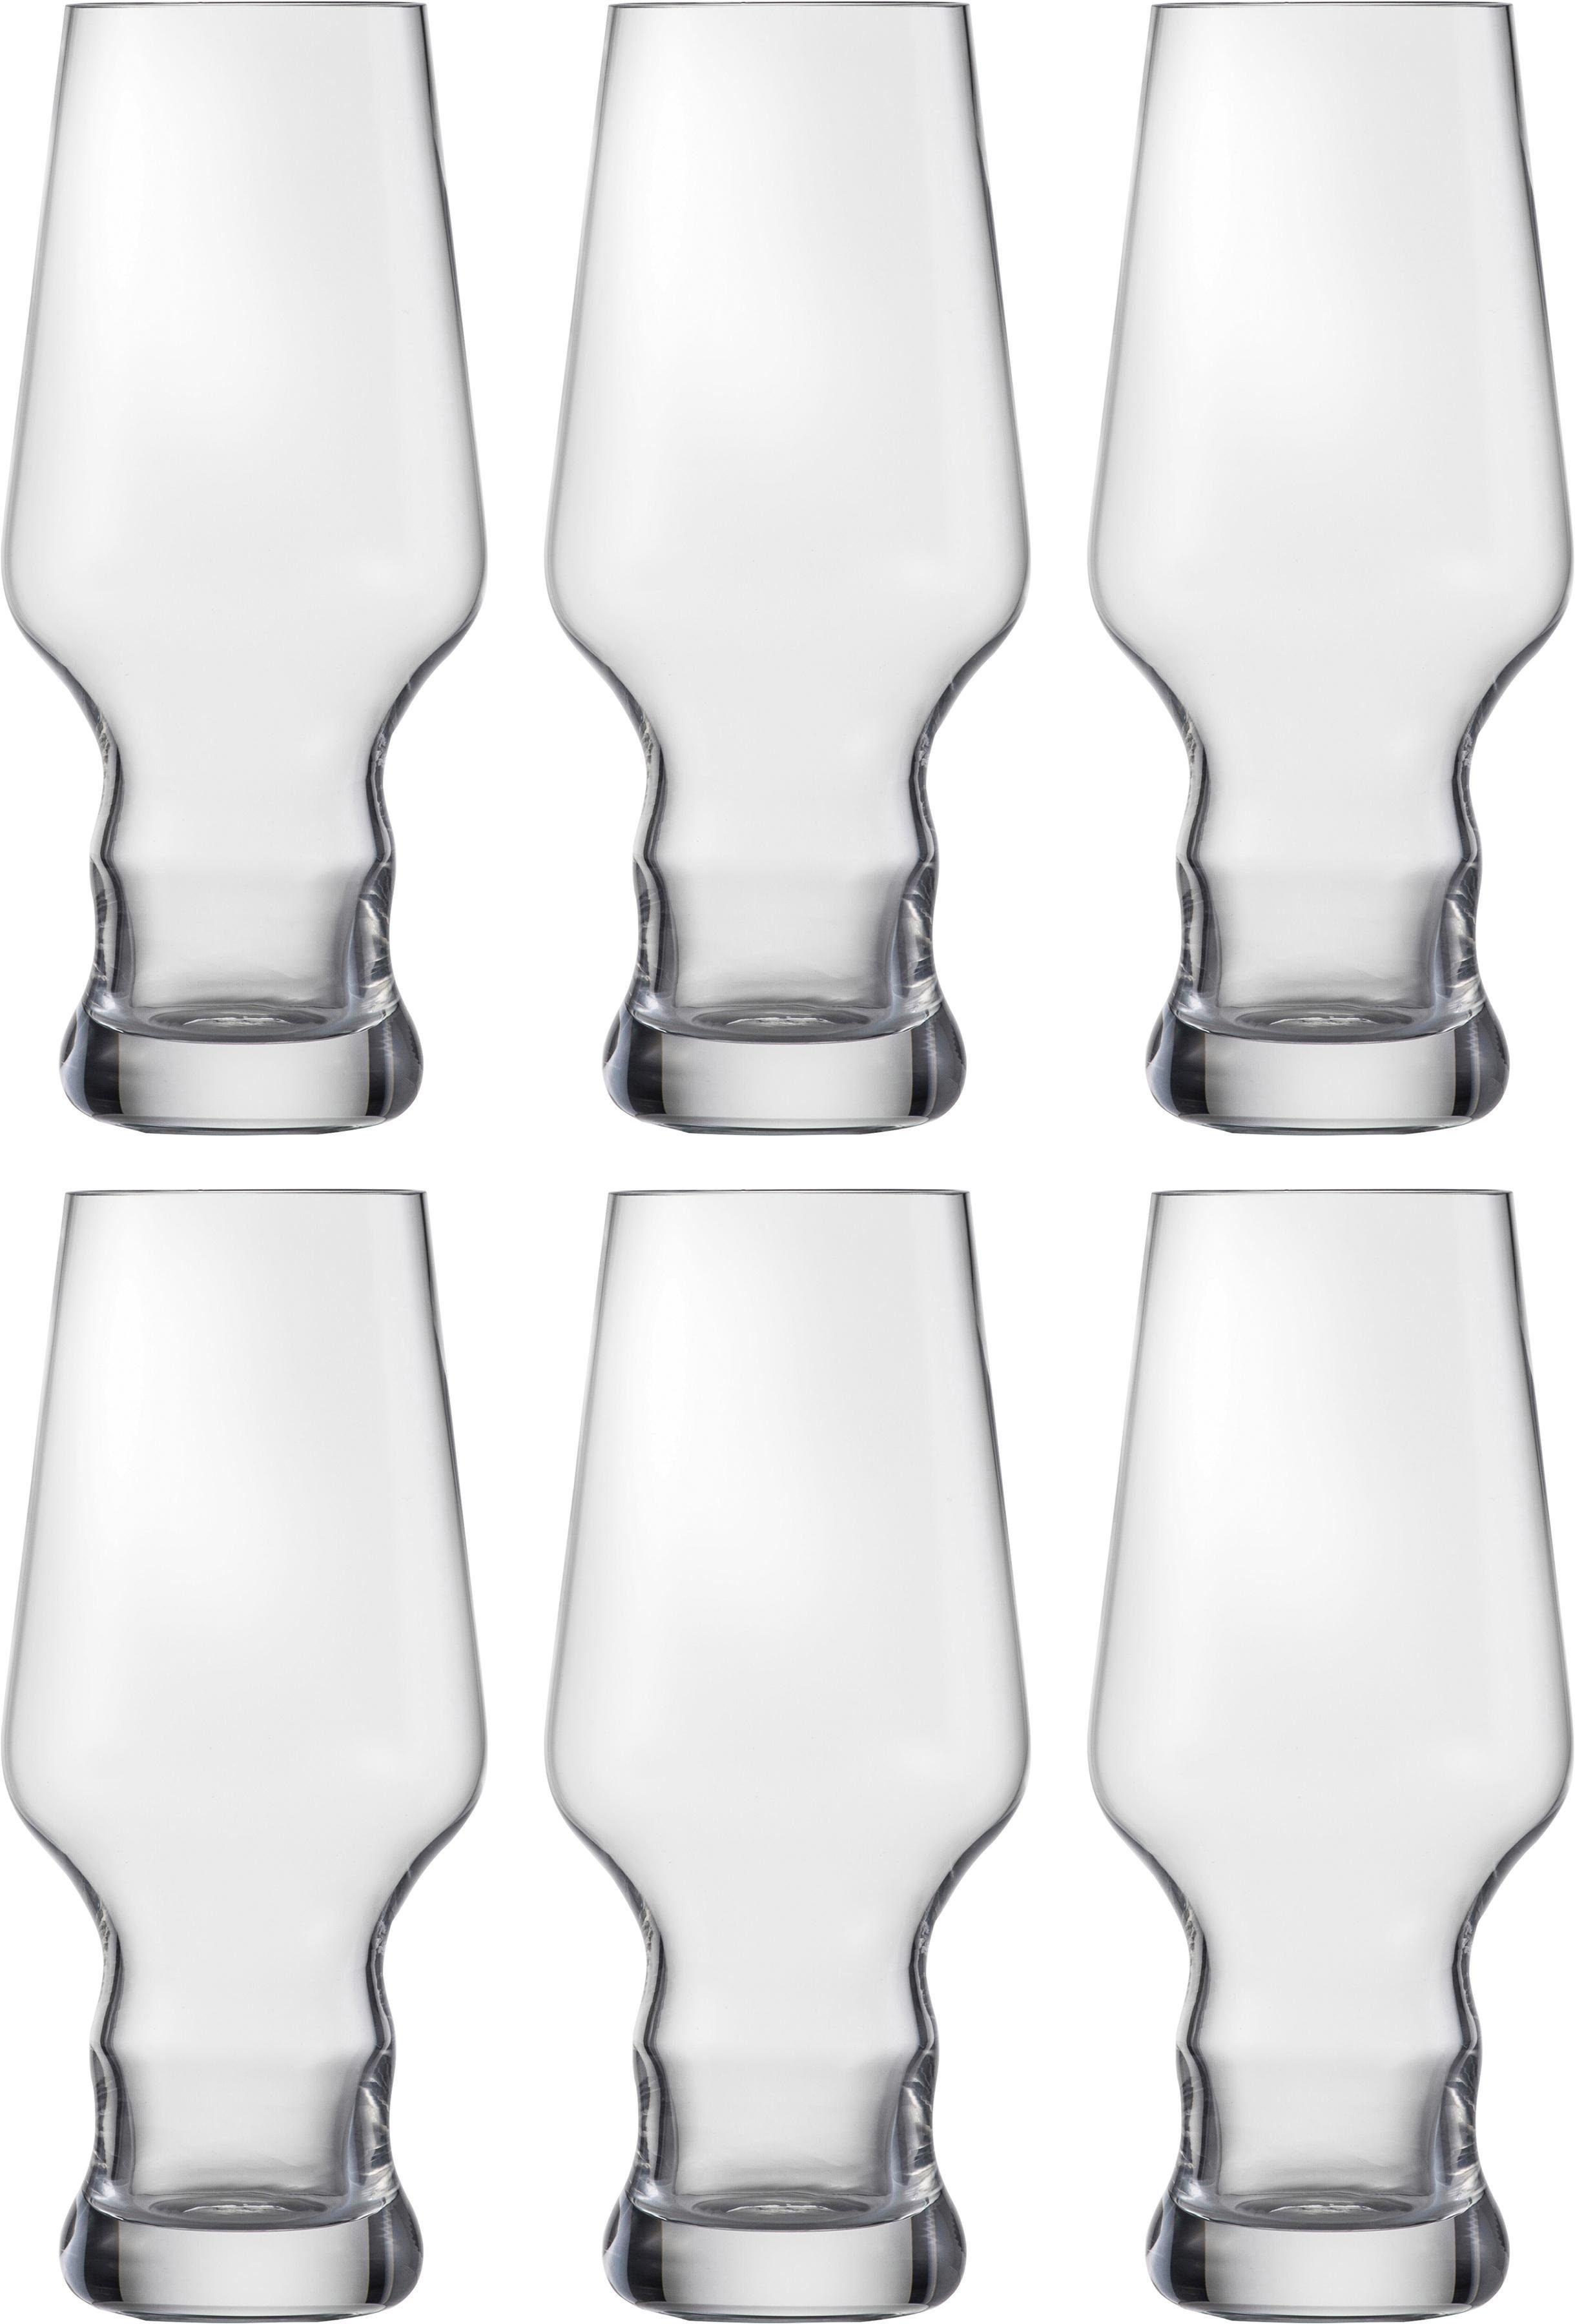 Eisch Bierglas Craft von Formgebung Kristallglas, bleifrei, der Unterstützung ml, 450 zur Beer Aromenentfaltung Craft Becher, 6-teilig